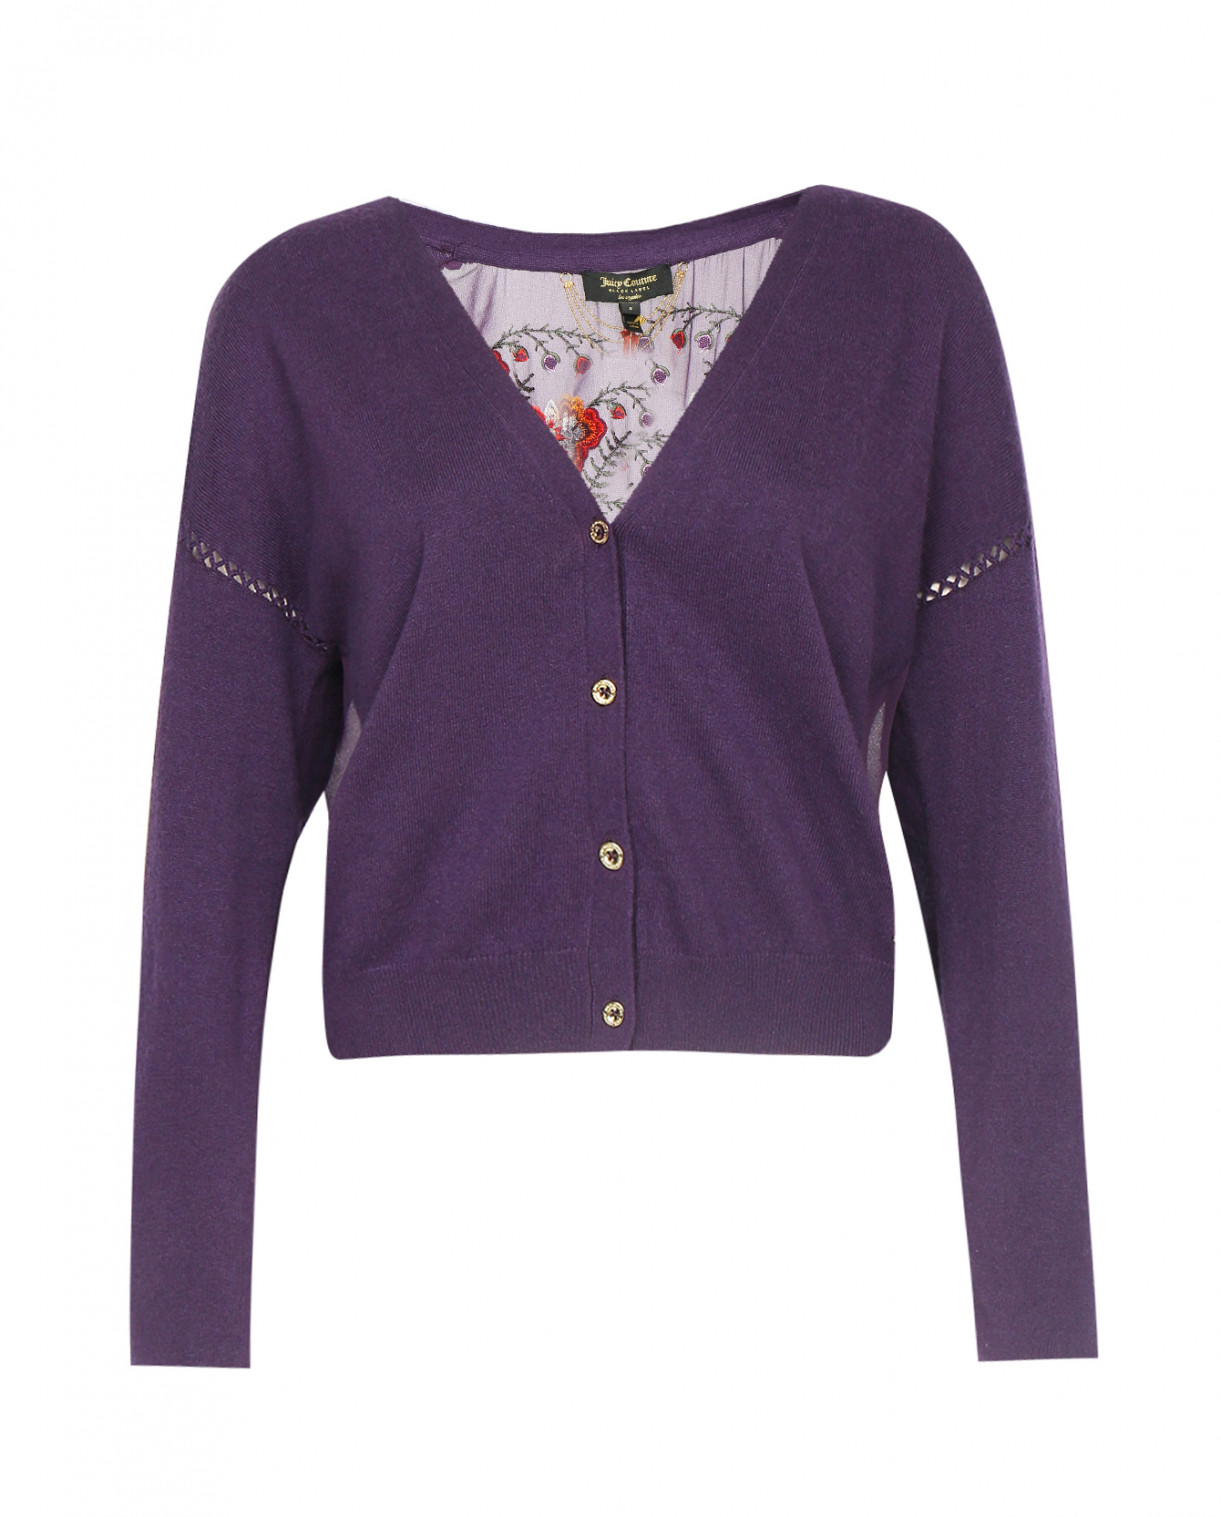 Кардиган из смешанной шерсти на пуговицах декорированный вышивкой Juicy Couture  –  Общий вид  – Цвет:  Фиолетовый